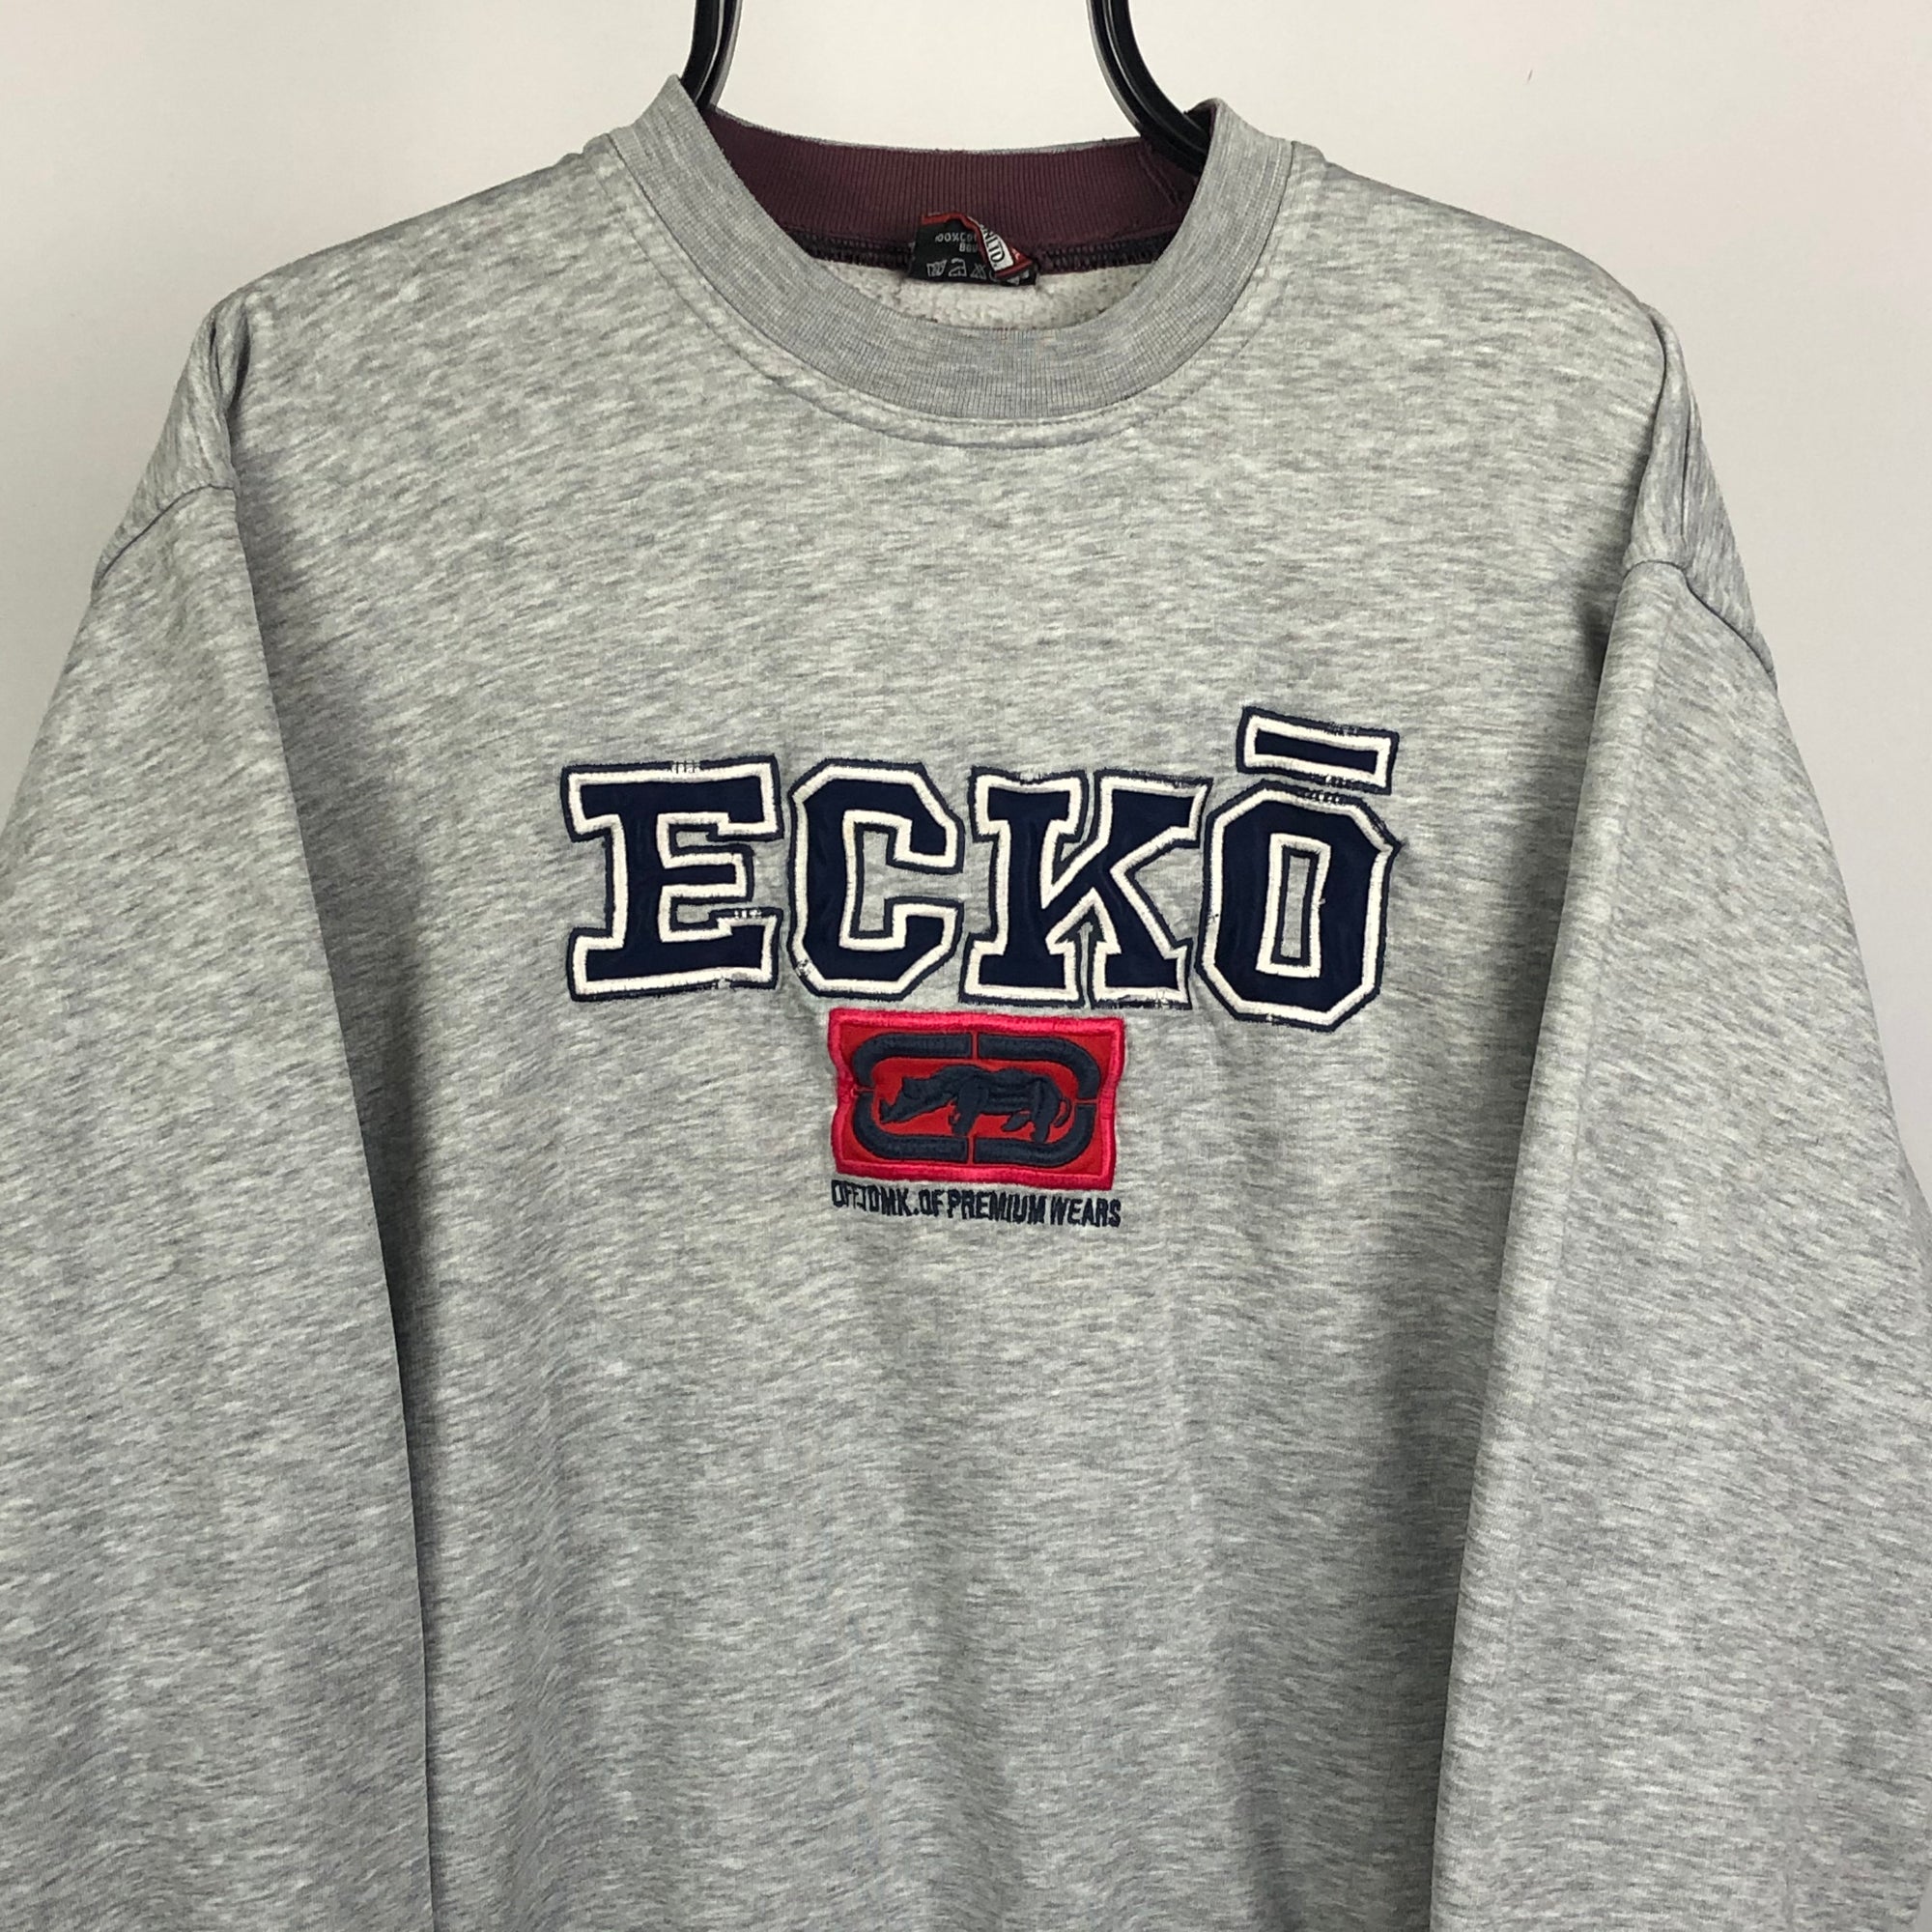 Vintage Ecko Unltd Spellout Sweatshirt in Grey - Men's Medium/Women's Large